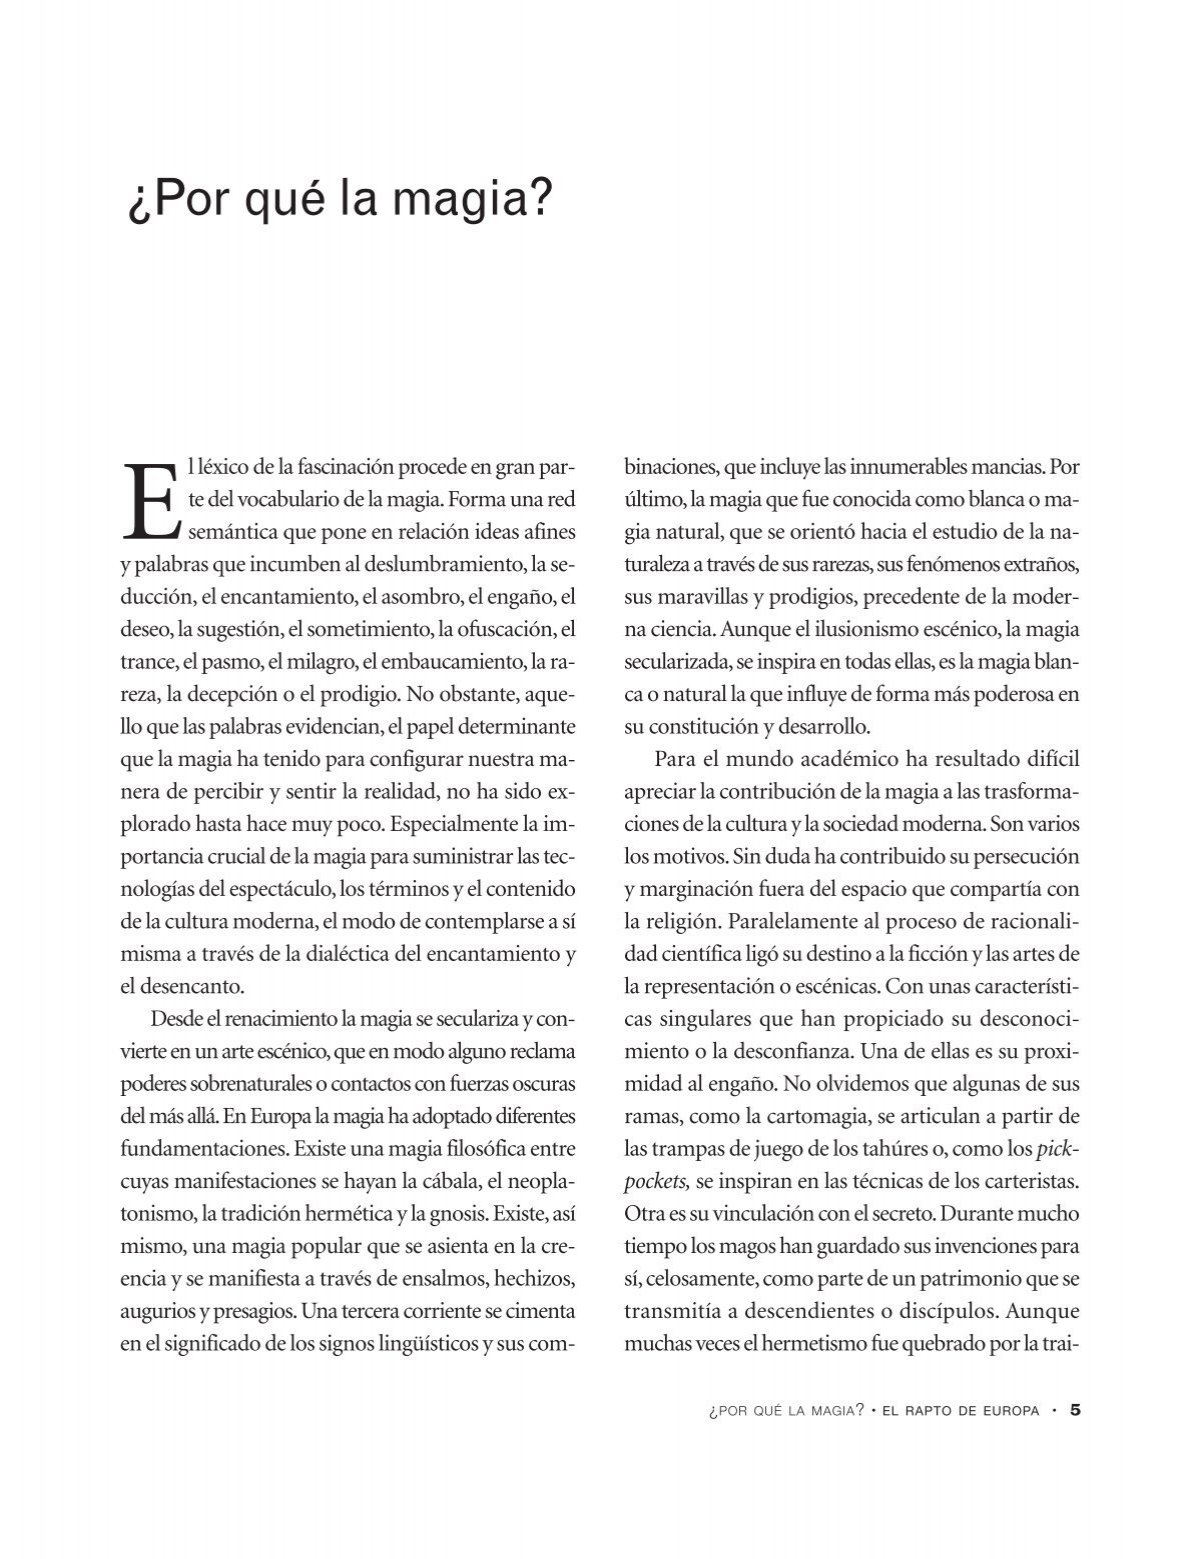 ¿por Qué La Magia Revistas Culturalesemk 5945